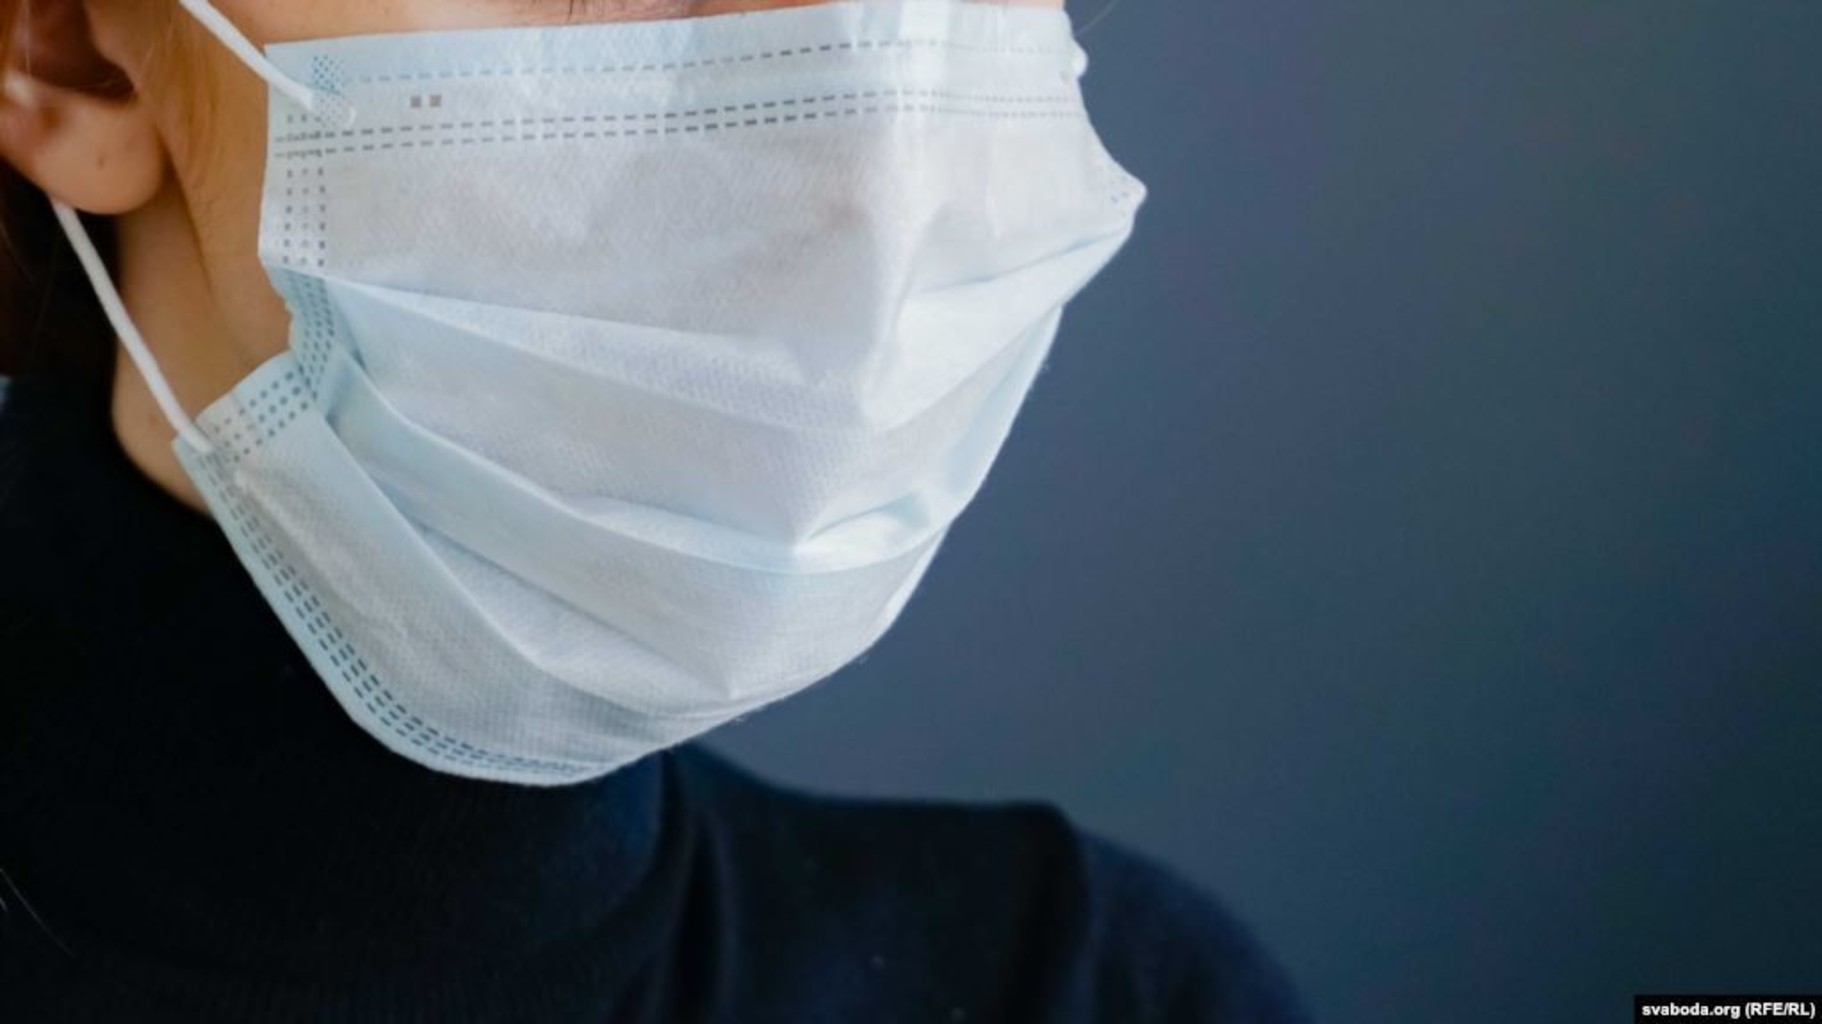 Защита медицинской маски. Маска медицинская. Медицинская маска в руке. Маска защитная медицинская. Медицинские маски от коронавируса.